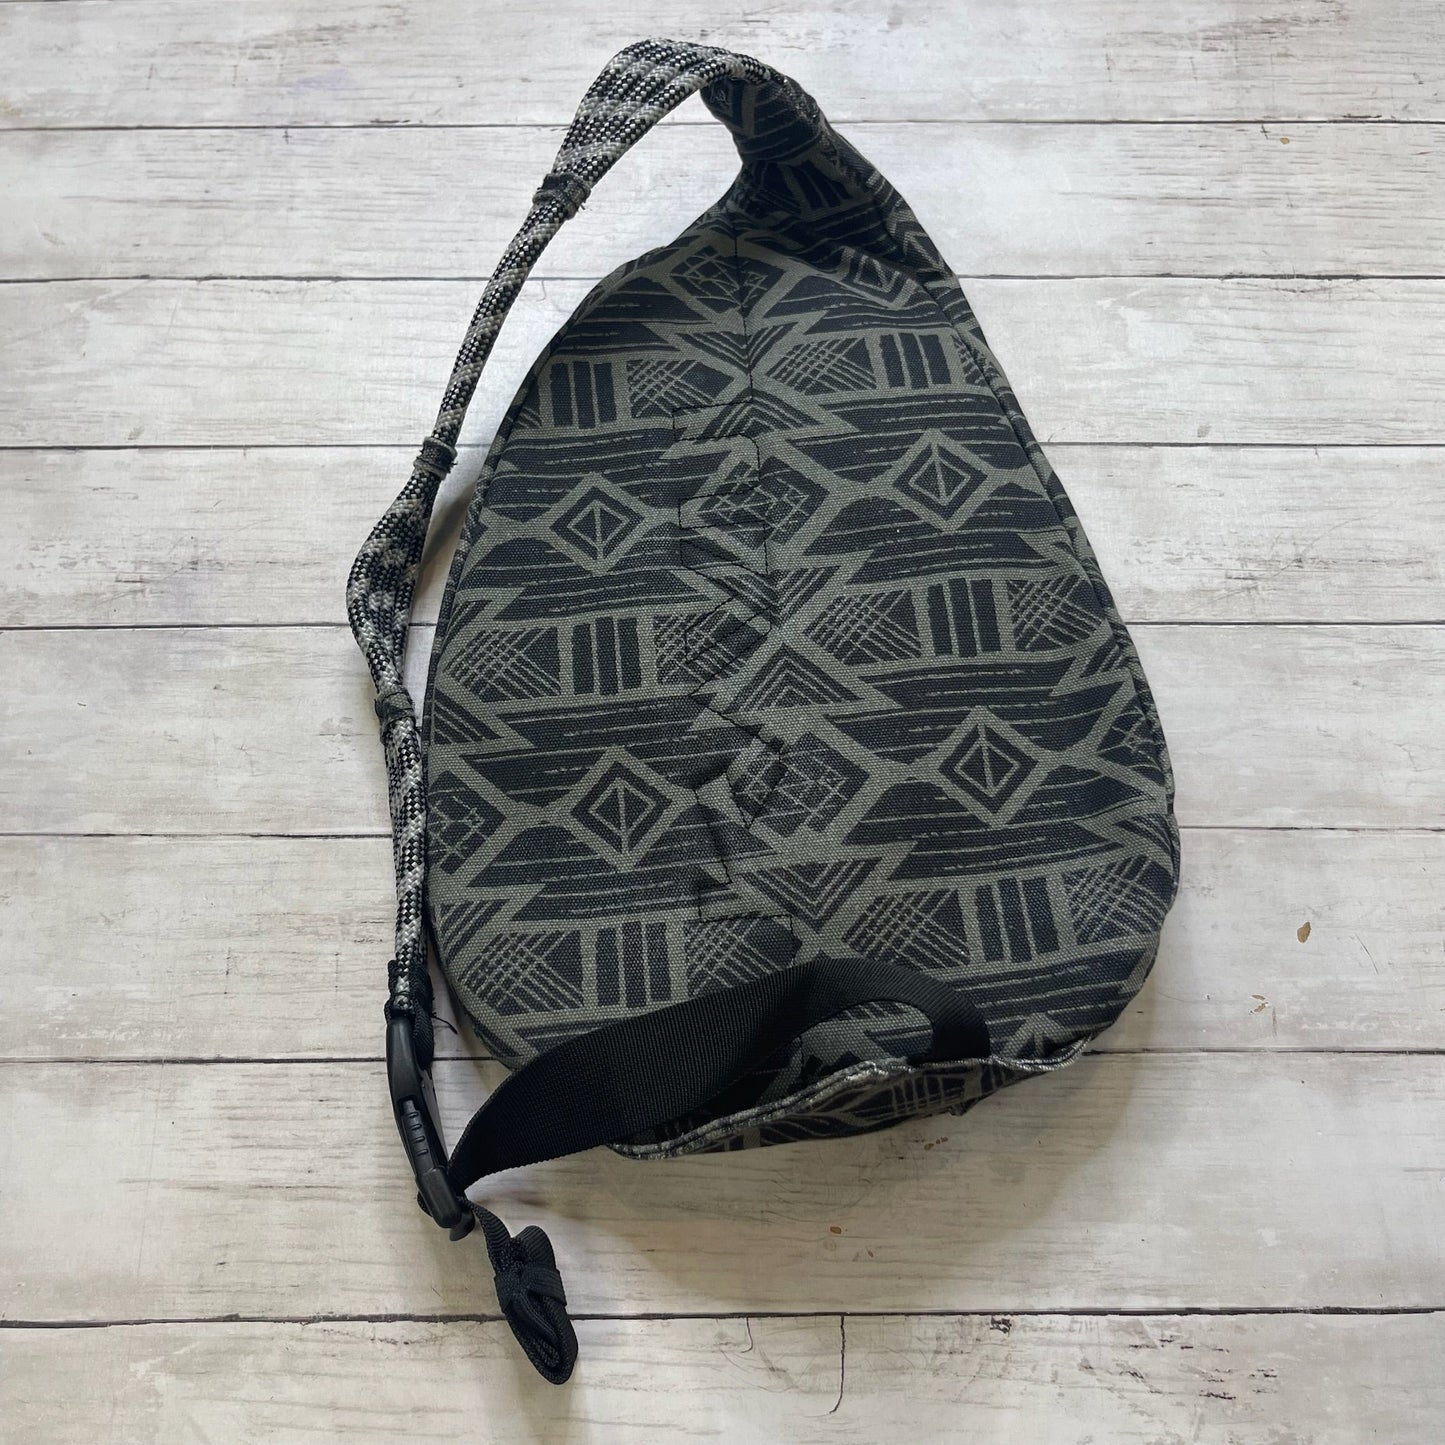 Backpack By Kavu  Size: Medium